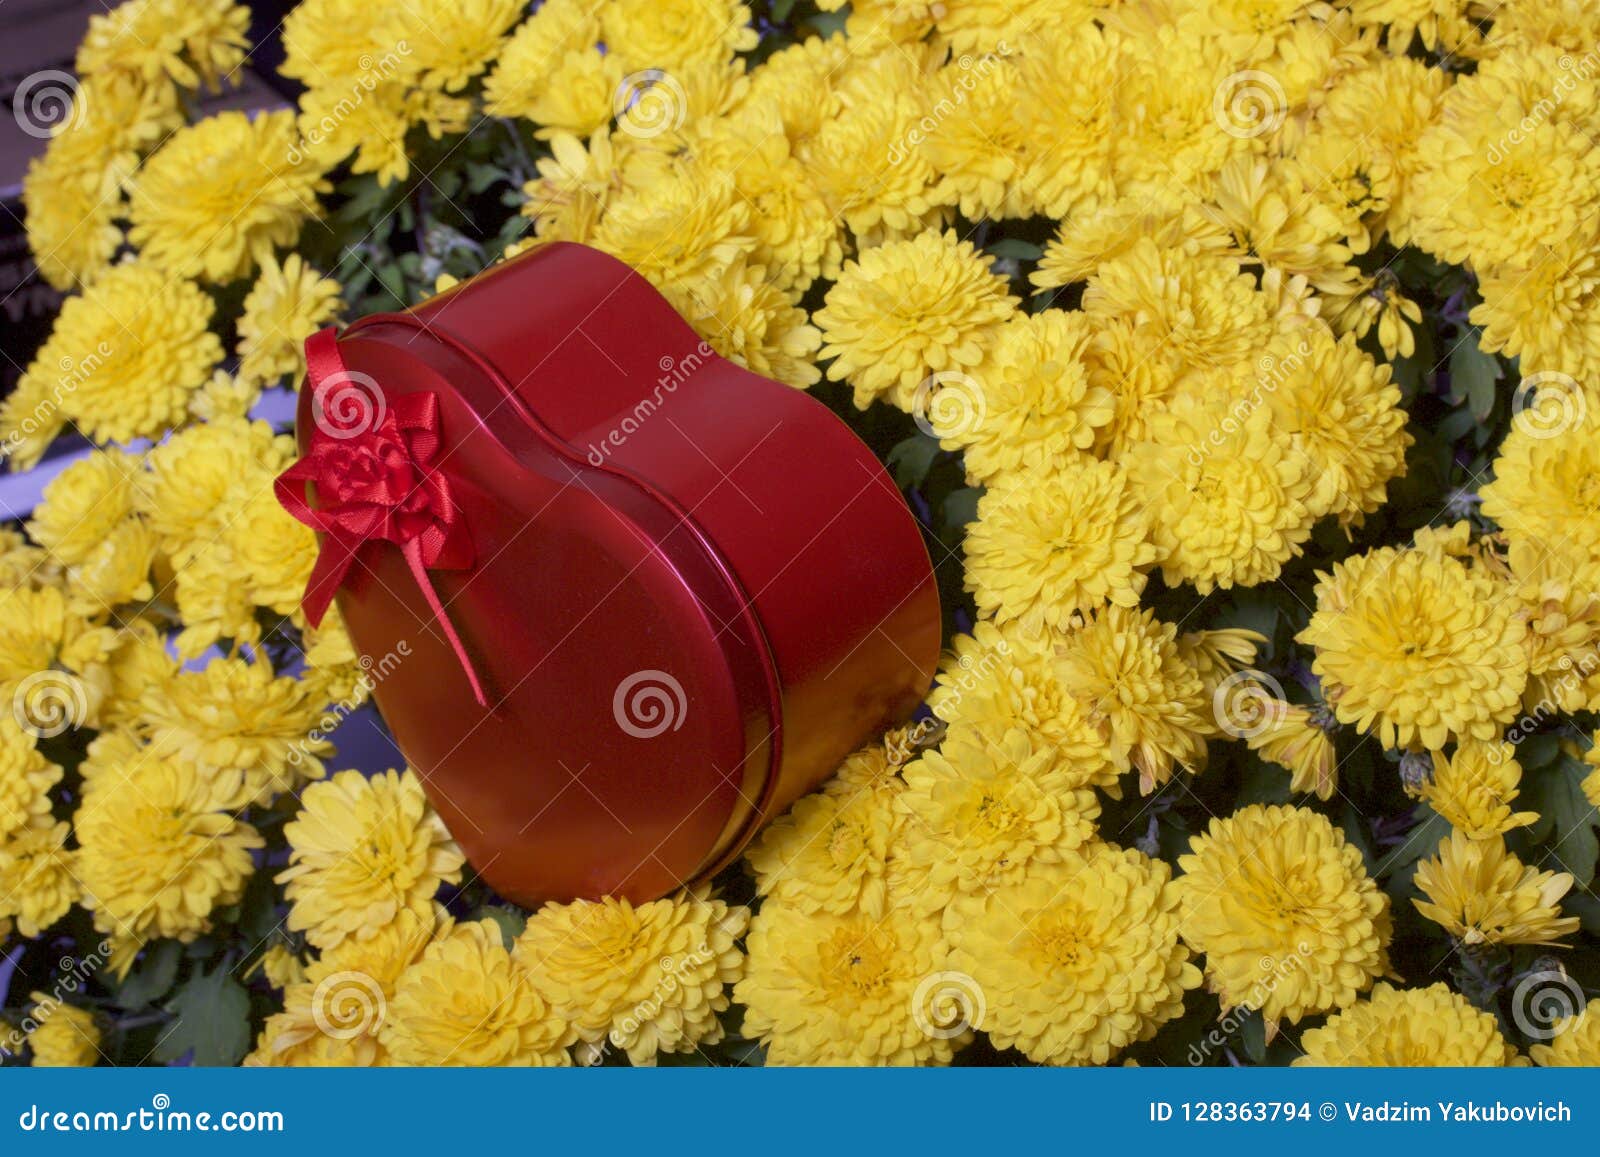 Букеты из хризантем — прекрасный вариант цветочного подарка